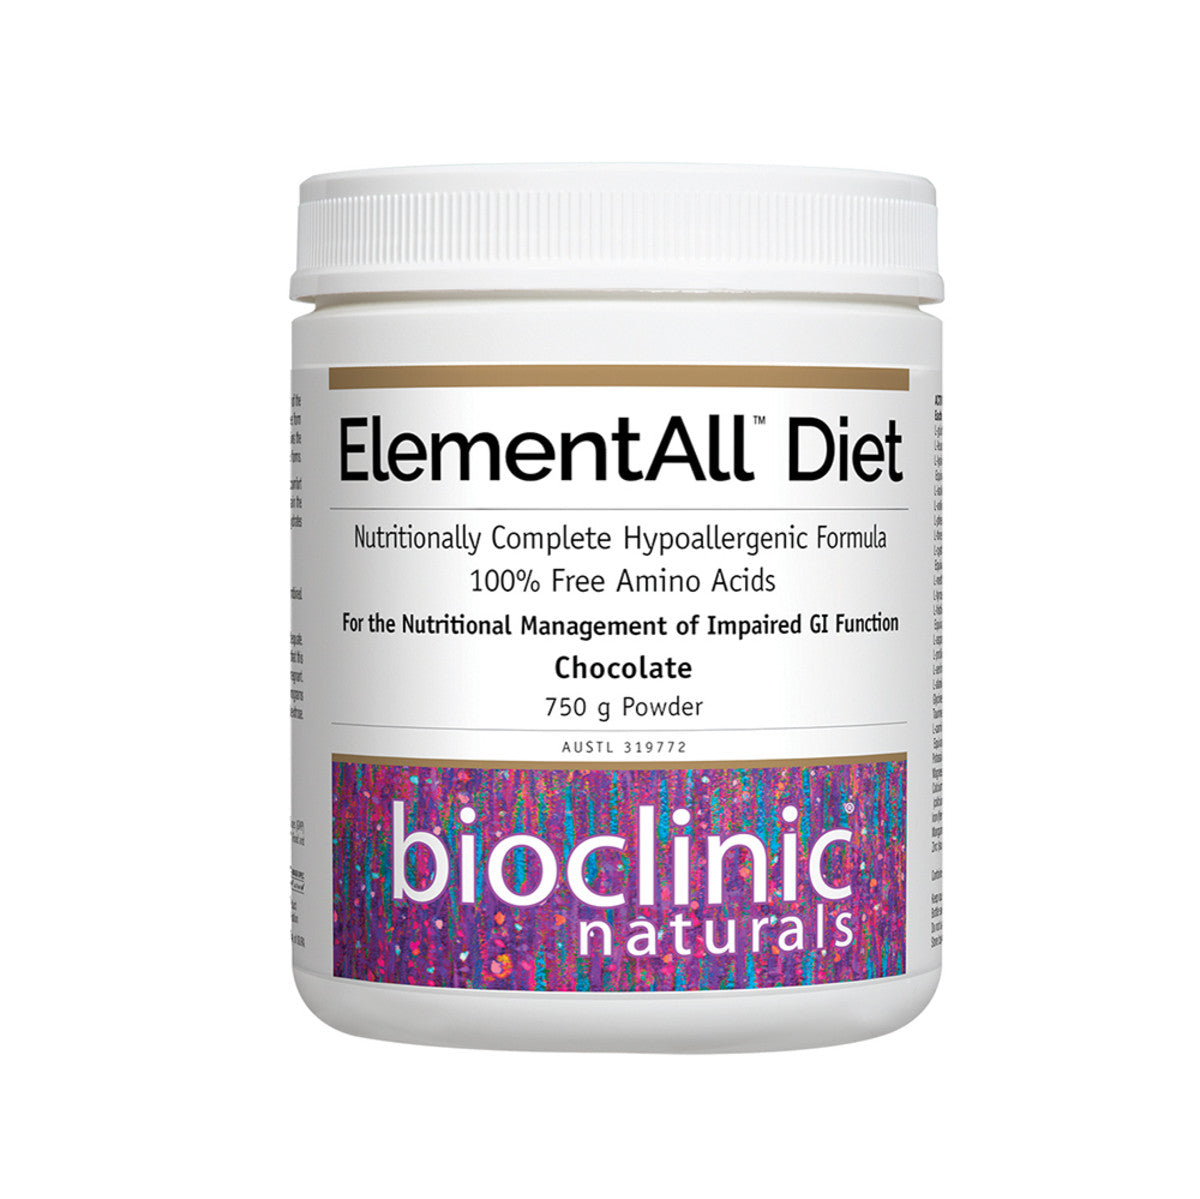 Bioclinic Naturals - ElementAll Diet Chocolate